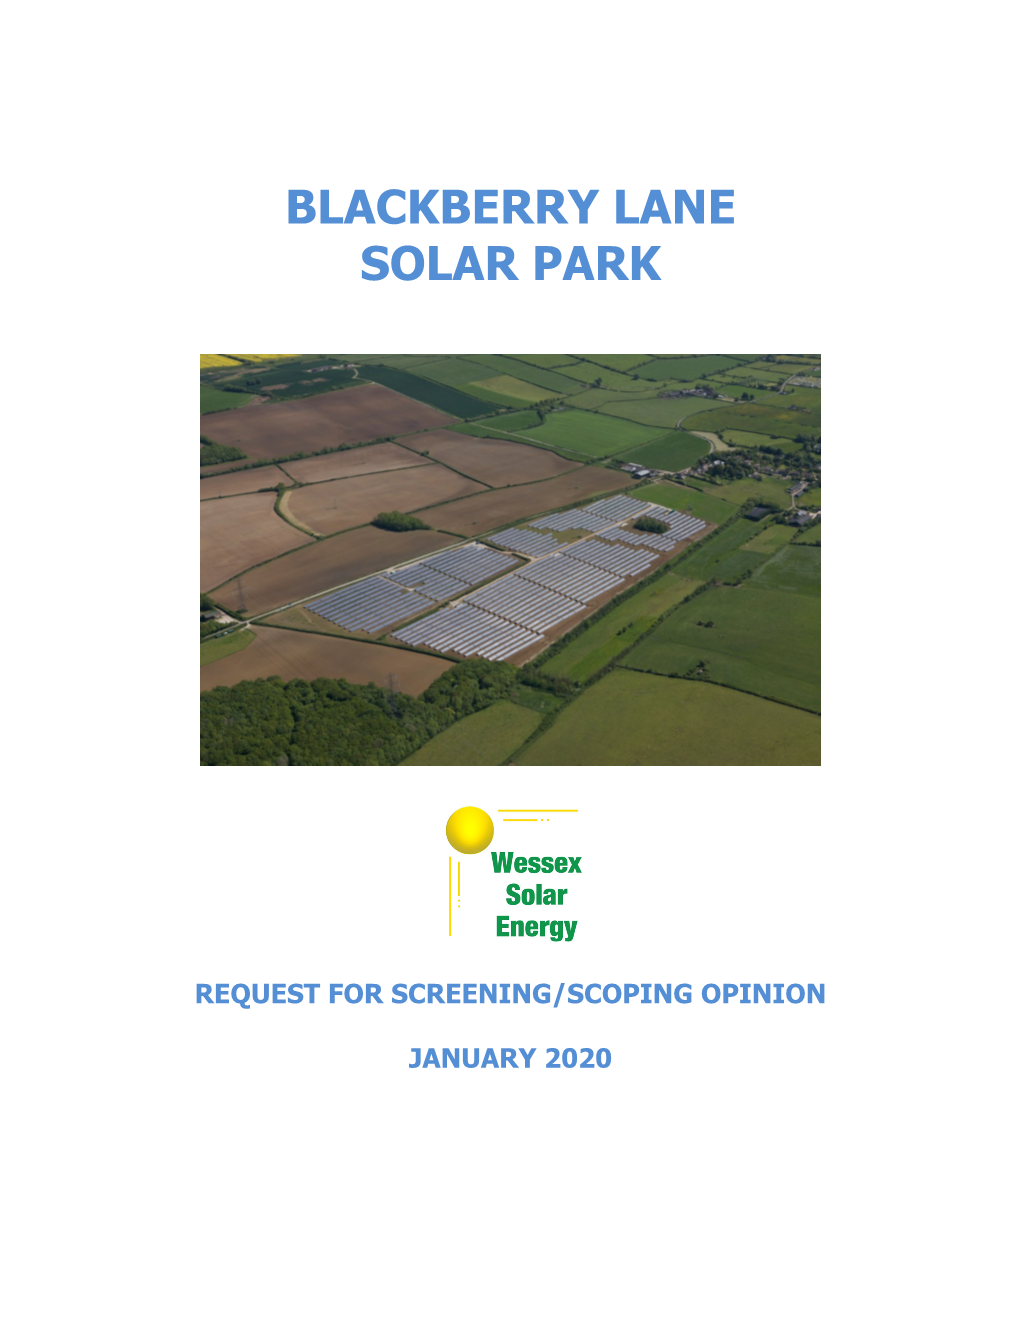 Blackberry Lane Solar Park